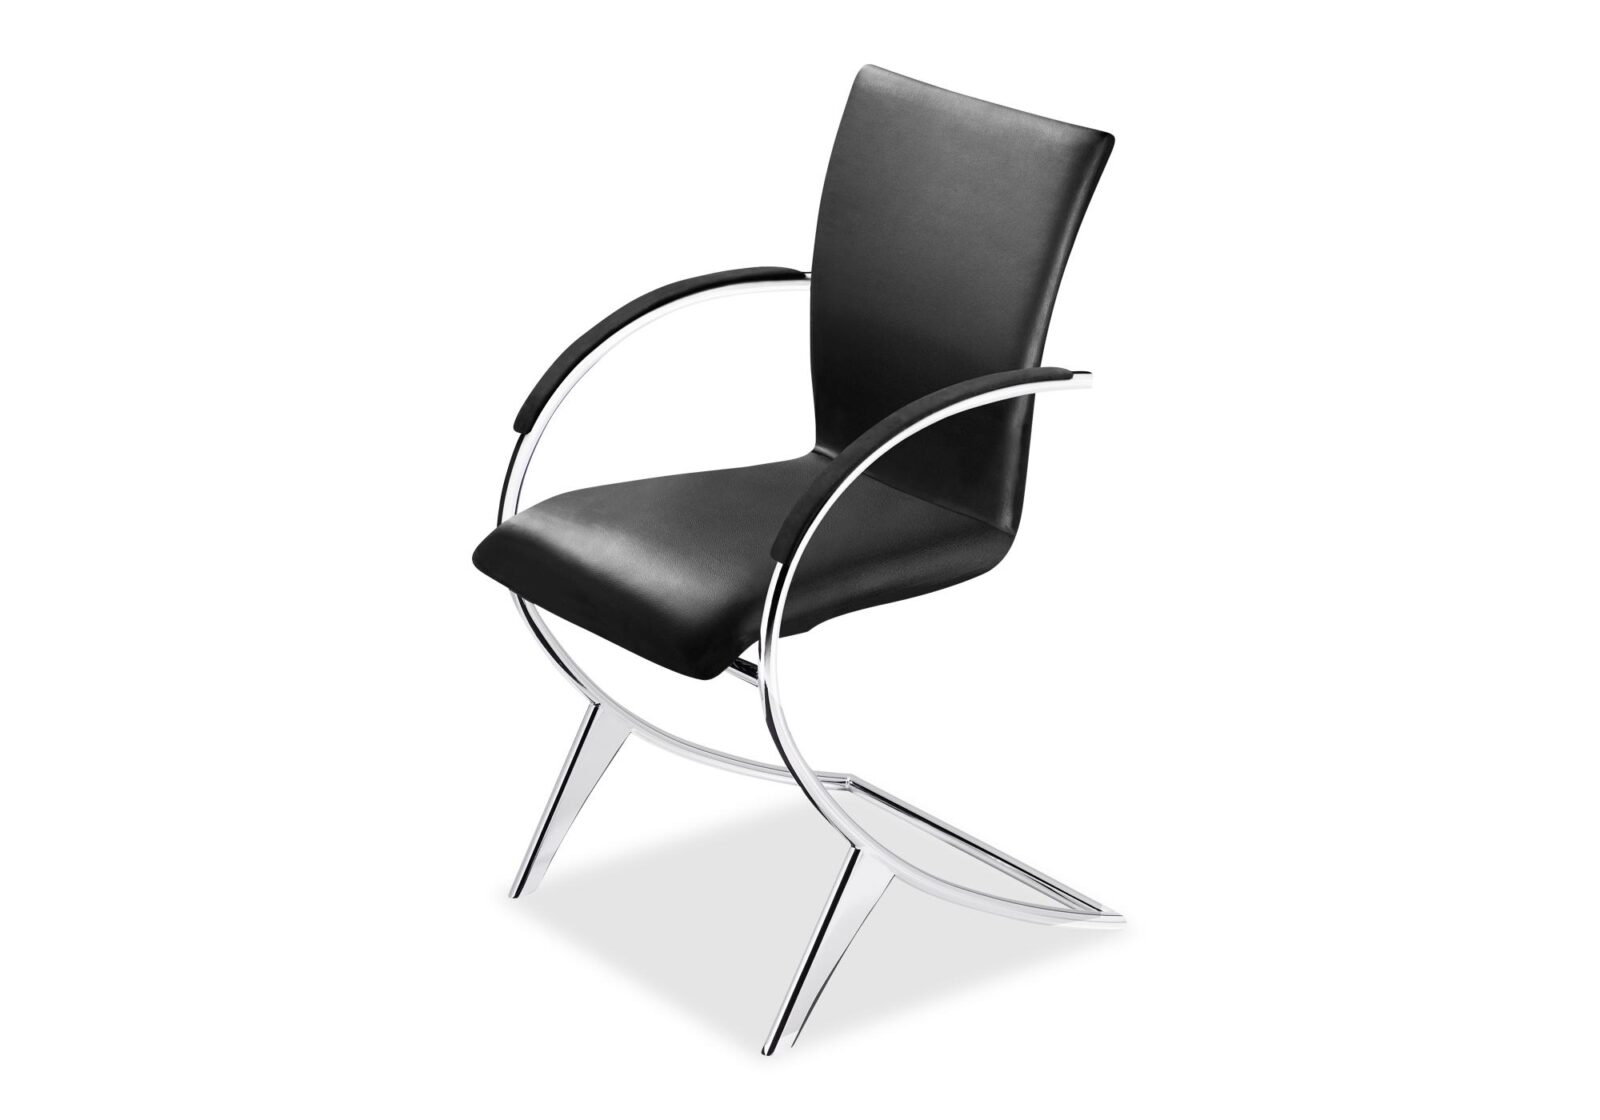 Freischwinger Stuhl Pala. Bezug: Leder. Farbe: Schwarz. Erhältlich bei Möbel Gallati.